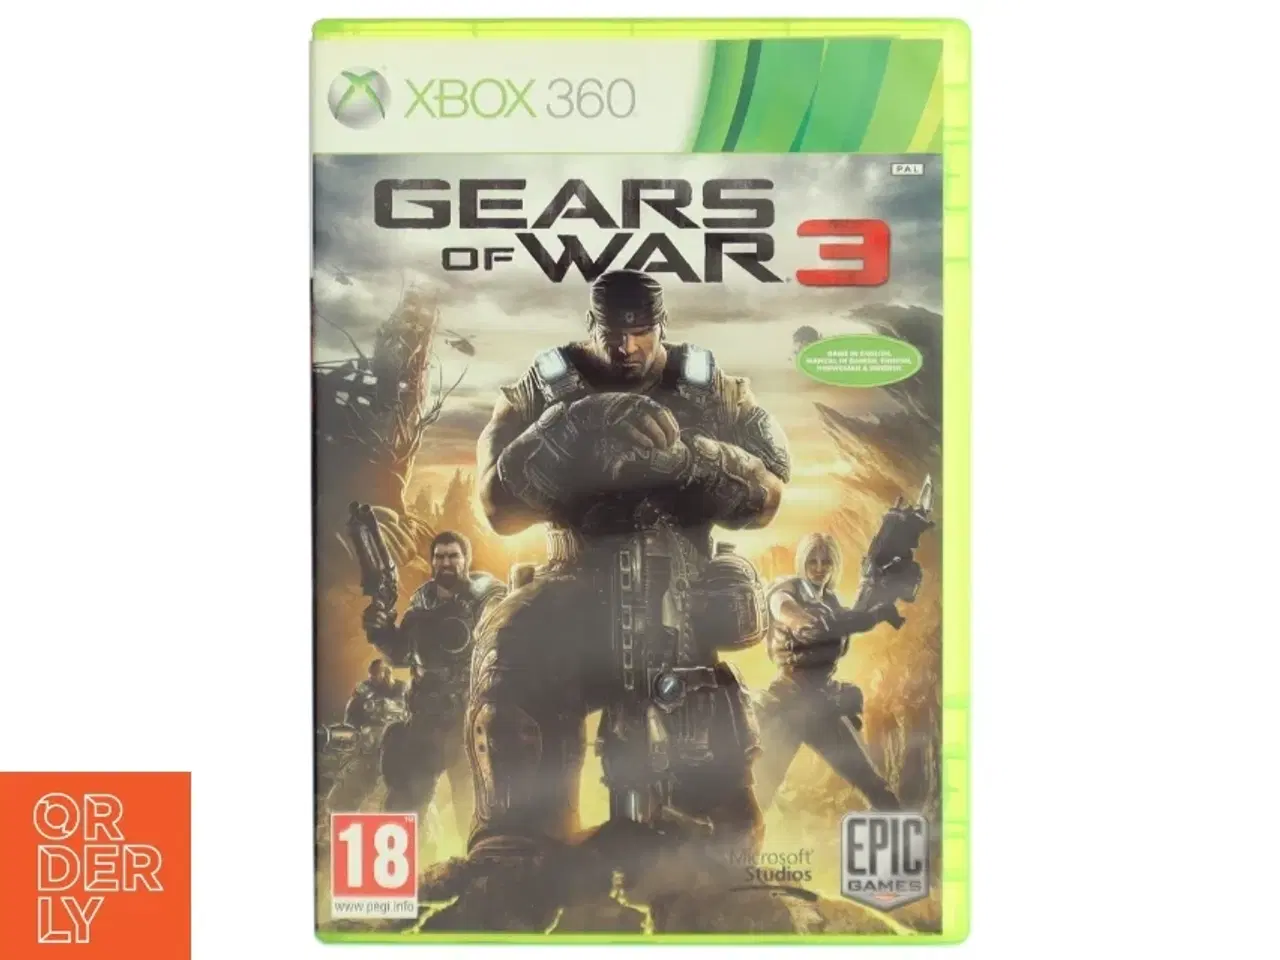 Billede 1 - Gears of War 3 - Xbox 360 spil fra Microsoft Studios, Epic Games